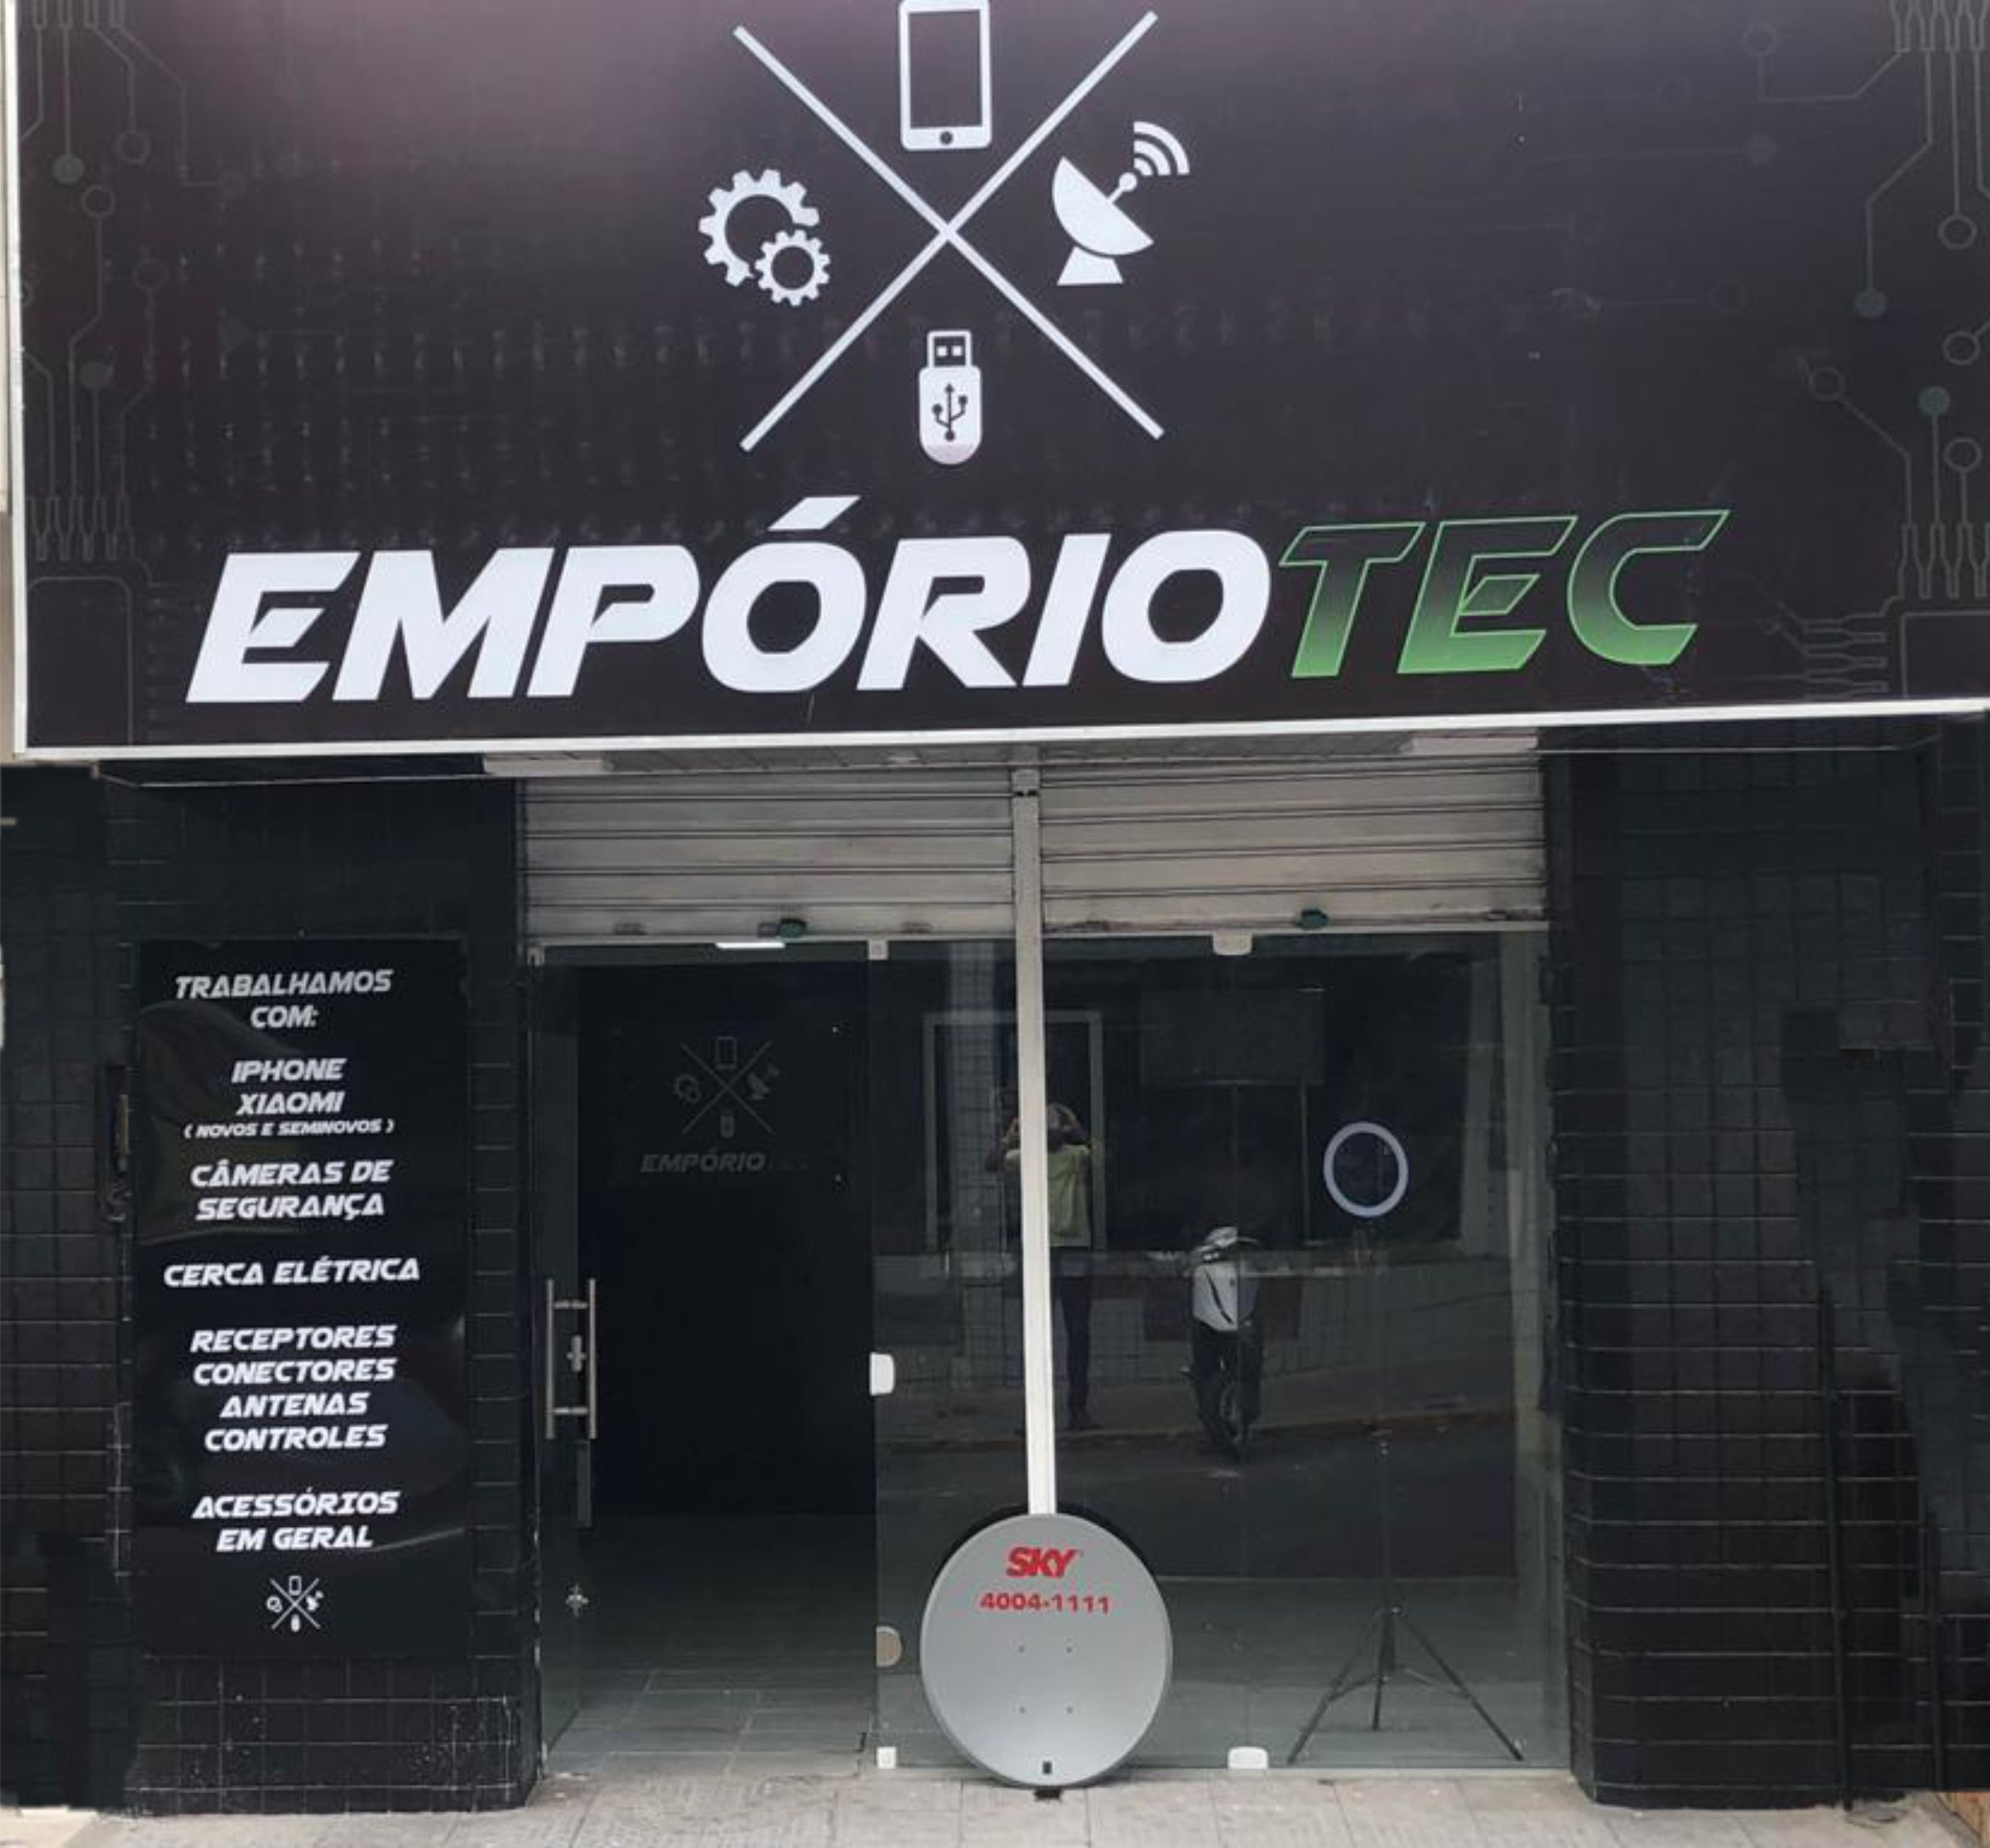 EmporioTec